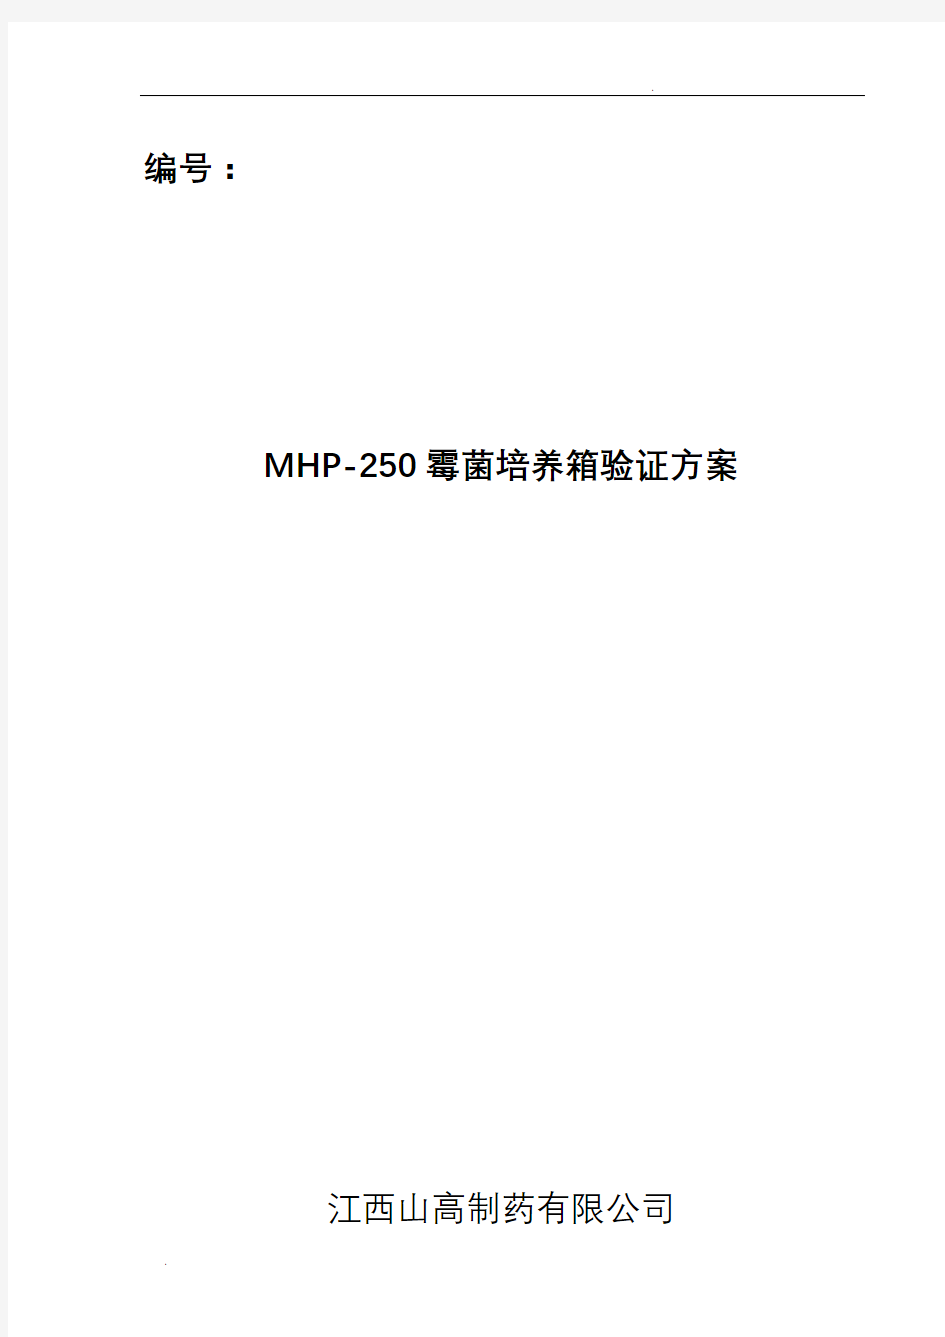 MPH-250霉菌培养箱验证方案